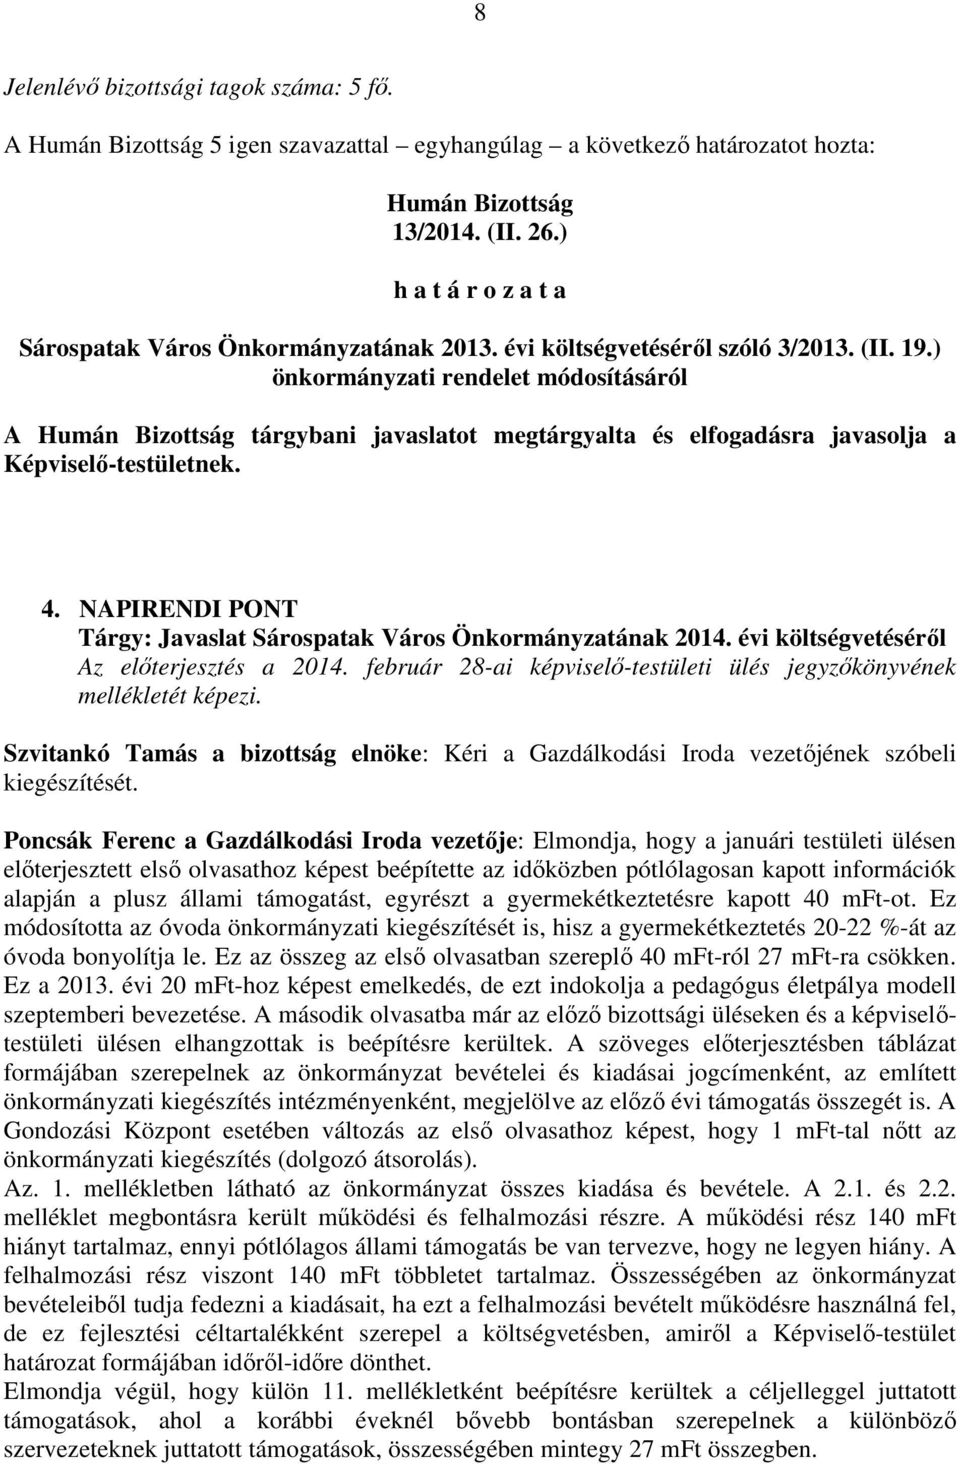 NAPIRENDI PONT Tárgy: Javaslat Sárospatak Város Önkormányzatának 2014. évi költségvetéséről Az előterjesztés a 2014. február 28-ai képviselő-testületi ülés jegyzőkönyvének mellékletét képezi.